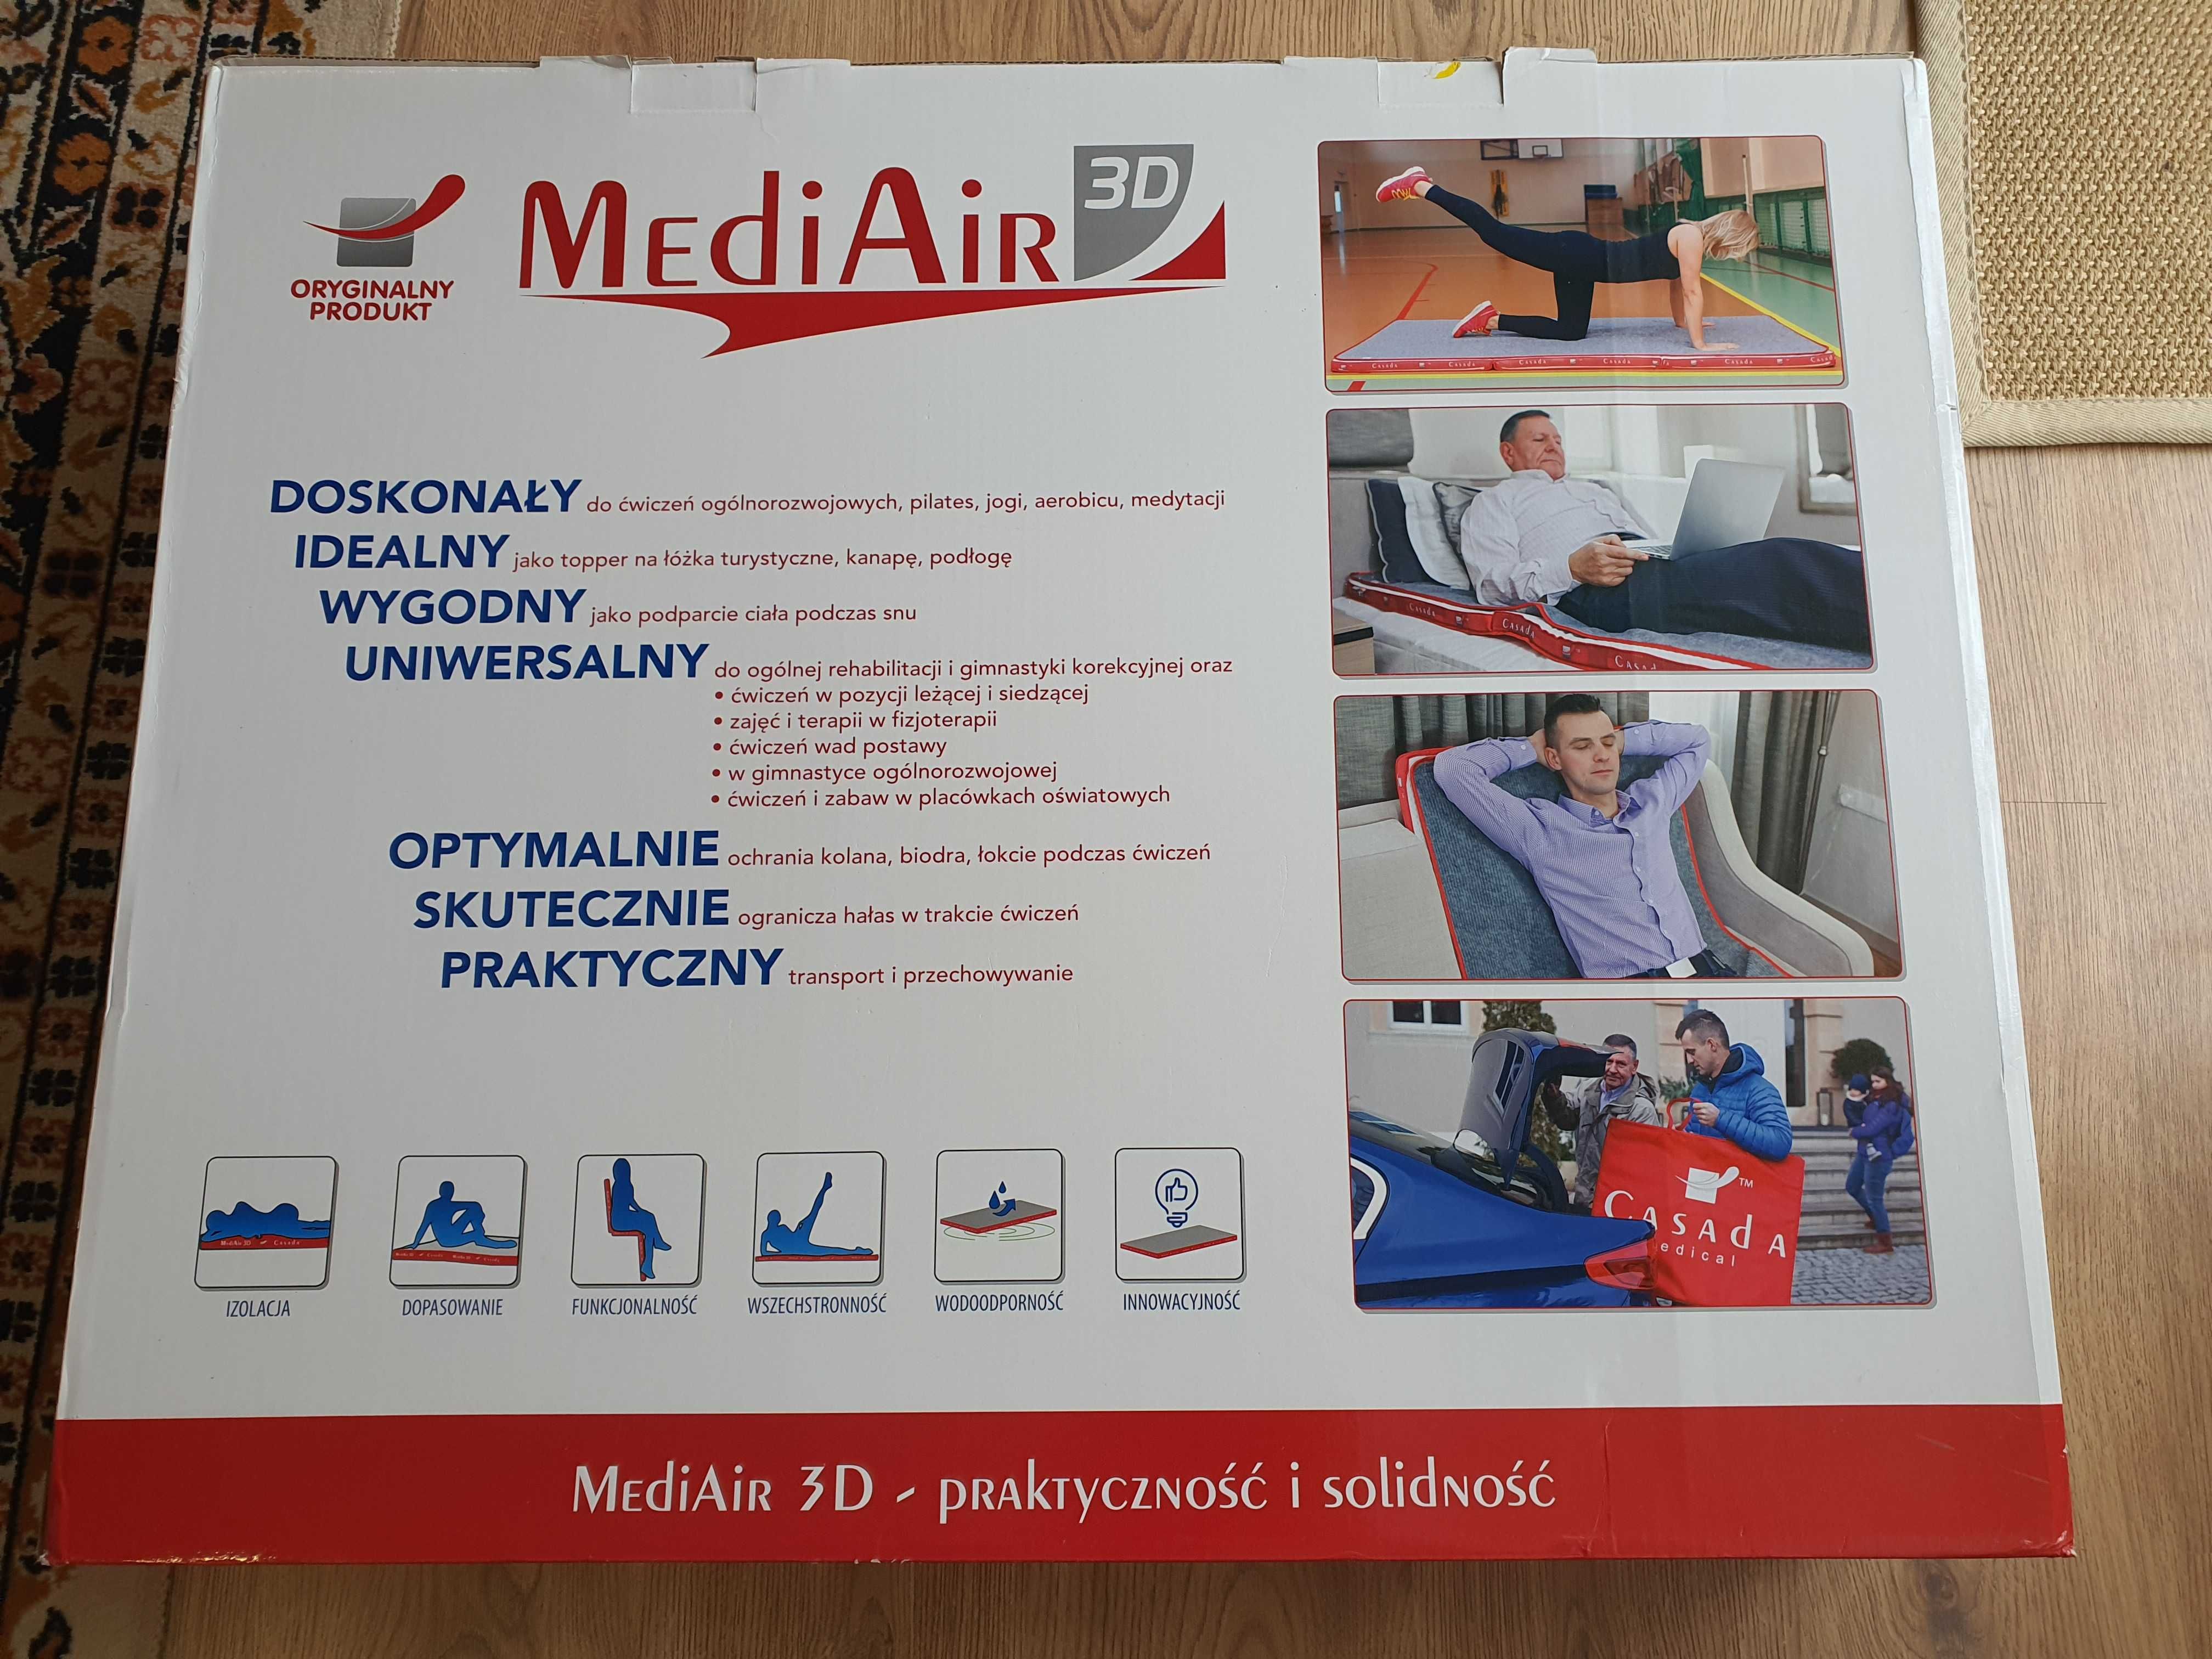 MediAir 3D firmy Casada materac rehabilitacyjny wełniany 80x200 nowy